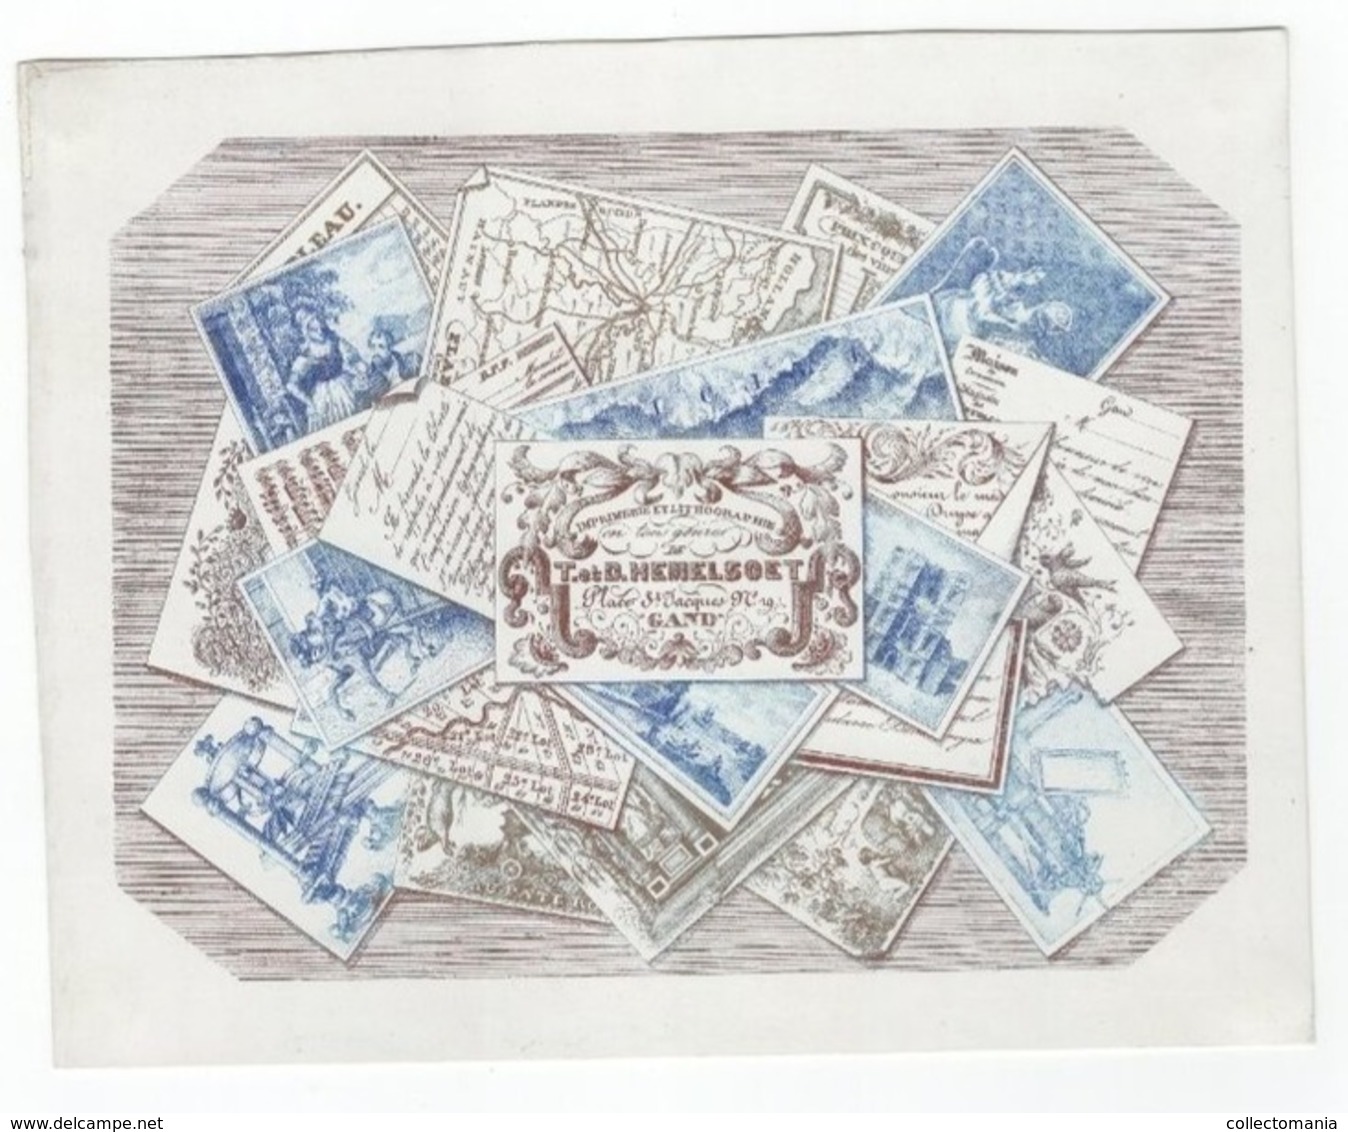 1 Carte Porcelaine  Imprimerie & Lithographie T.et D. Hemelsoet  Place  St Jacques Gand  Tous Genres 14,5x 18,5 cm - Porcelaine